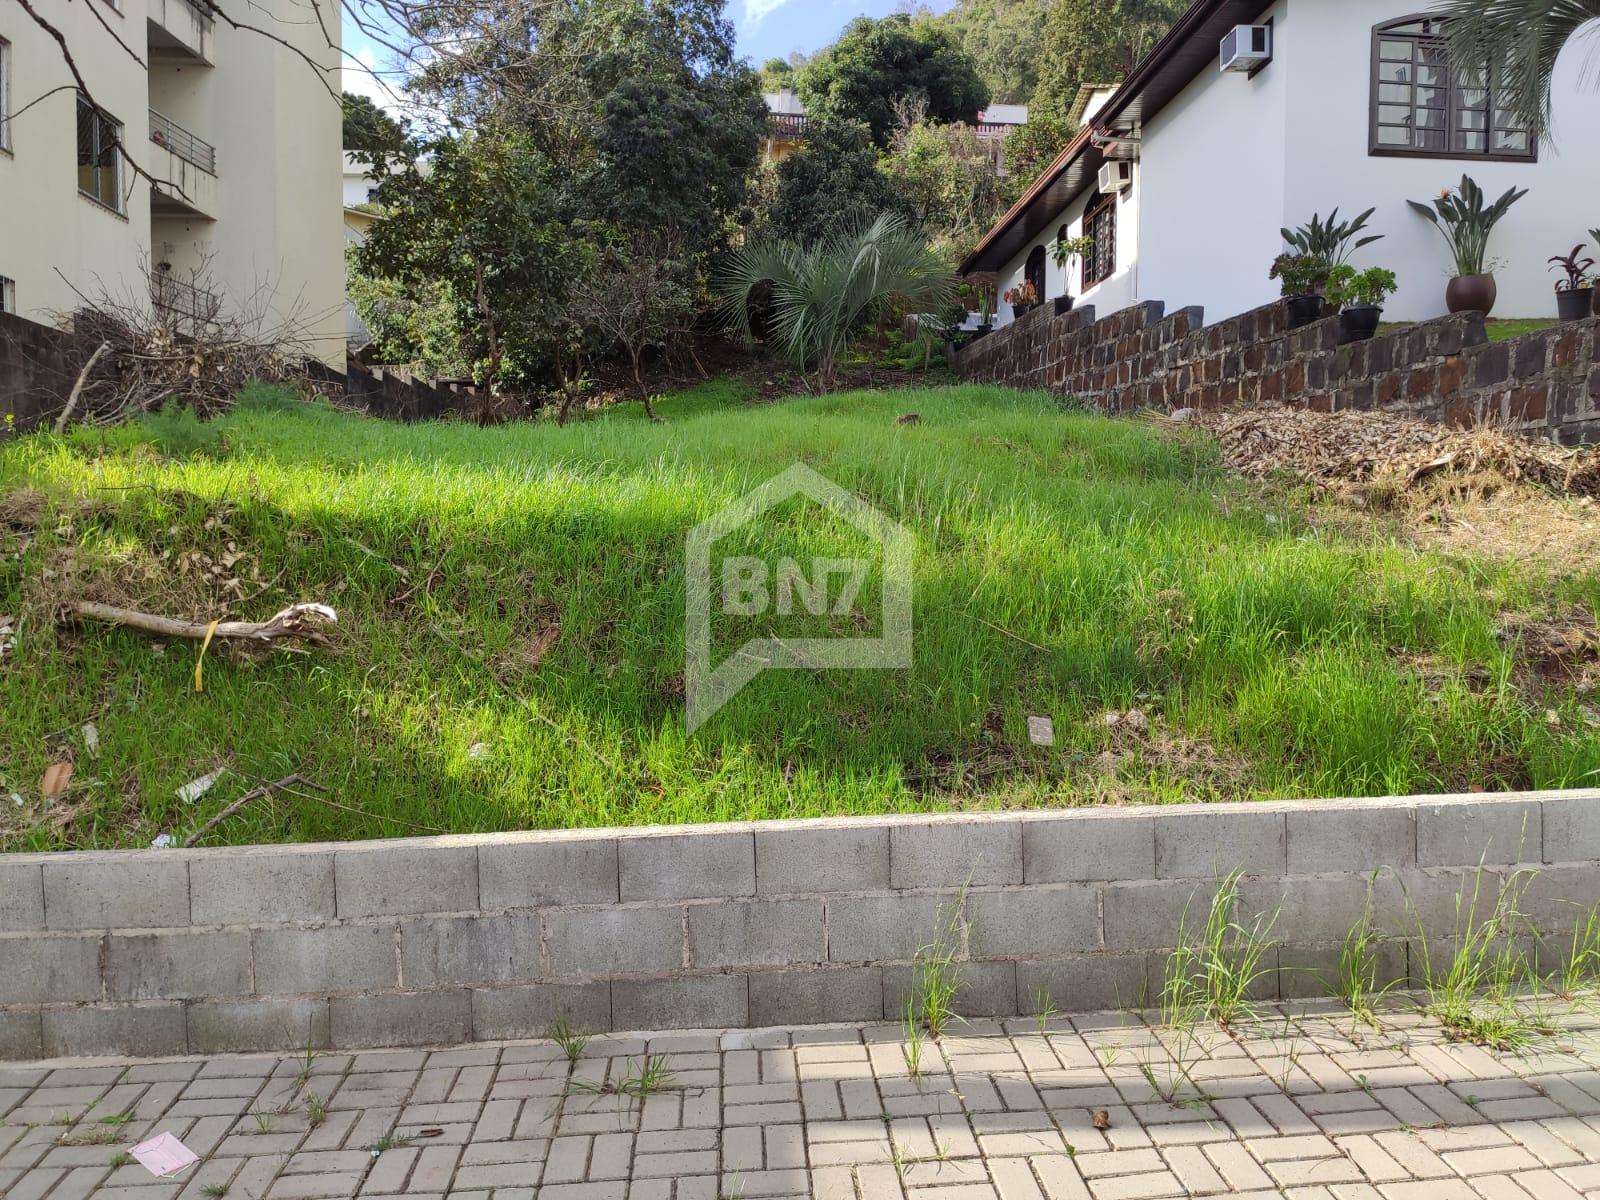 BN7 Negócios Imobiliária em Francisco Beltrão PR